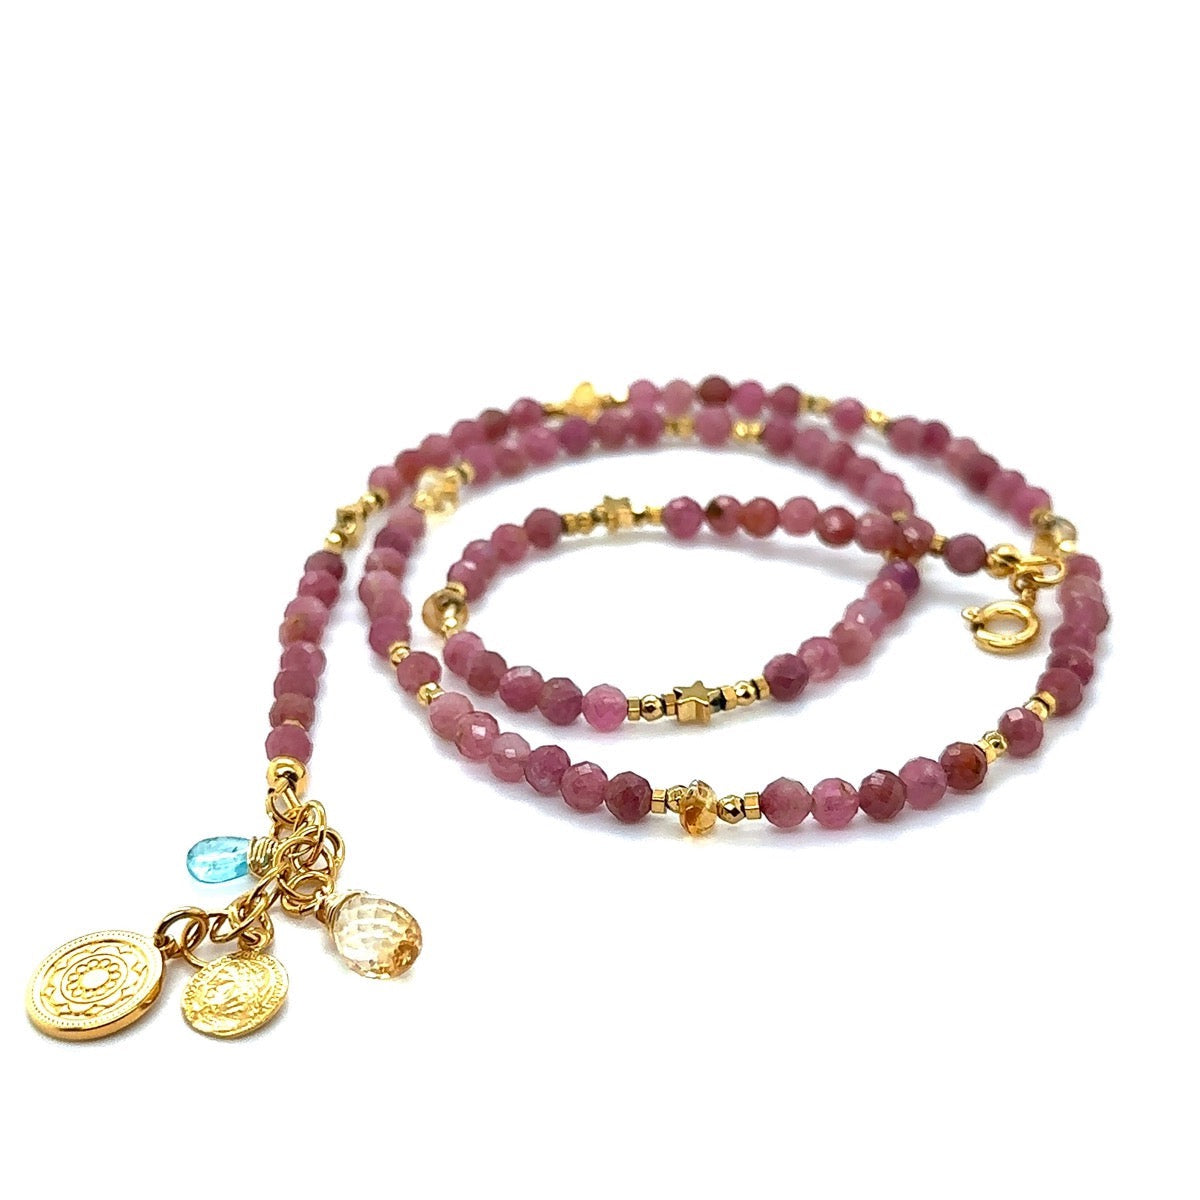 Różowy turmalin naszyjnik otulona miłością Ewa Mrochen Jewellery Autorska biżuteria magicznie luksusowa